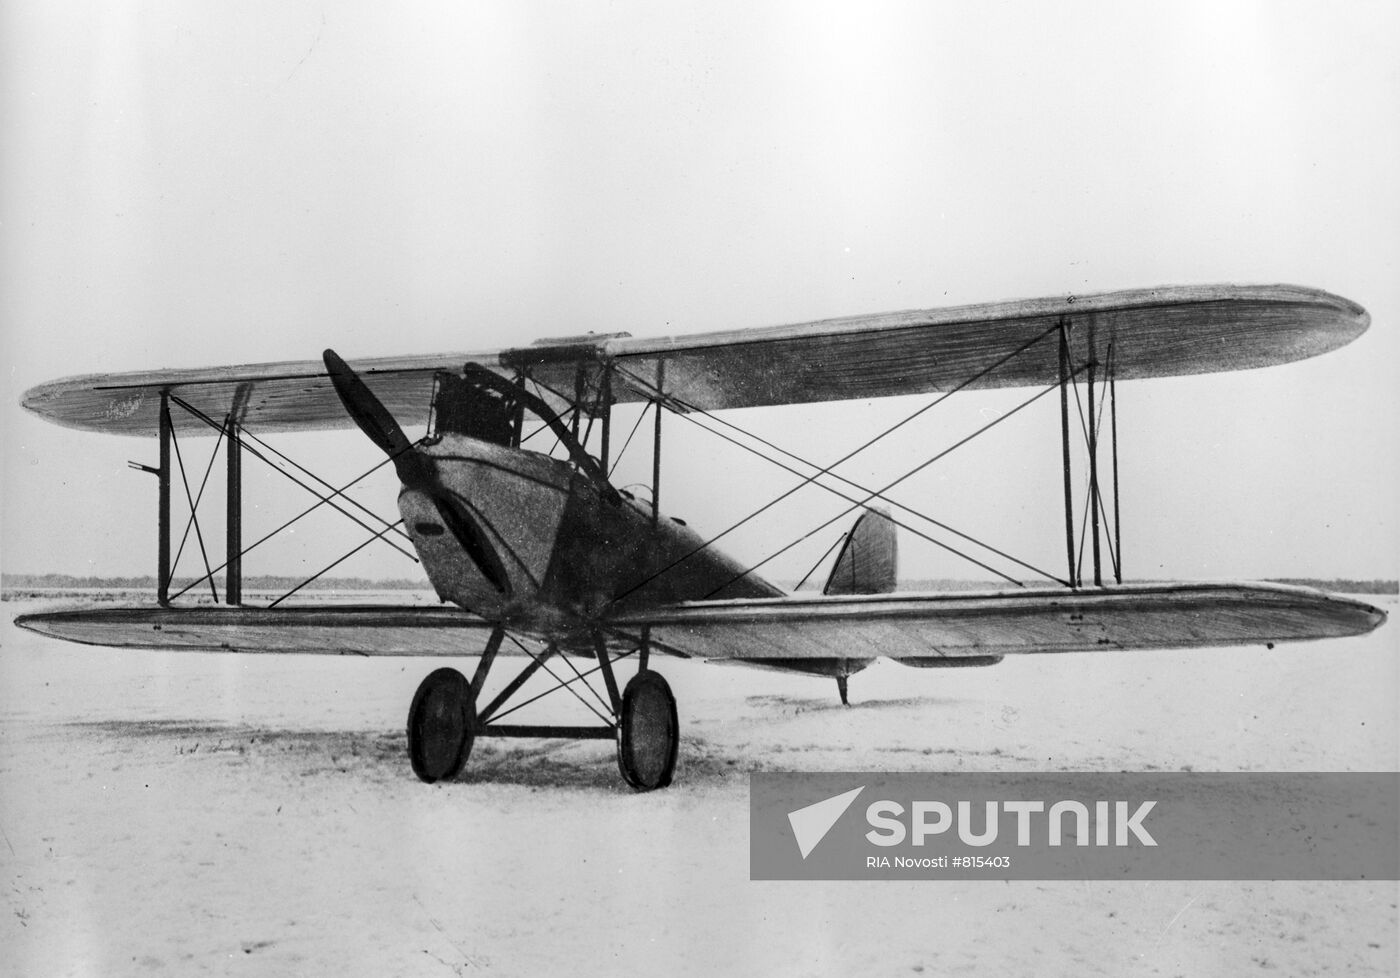 The AIR-1 biplane